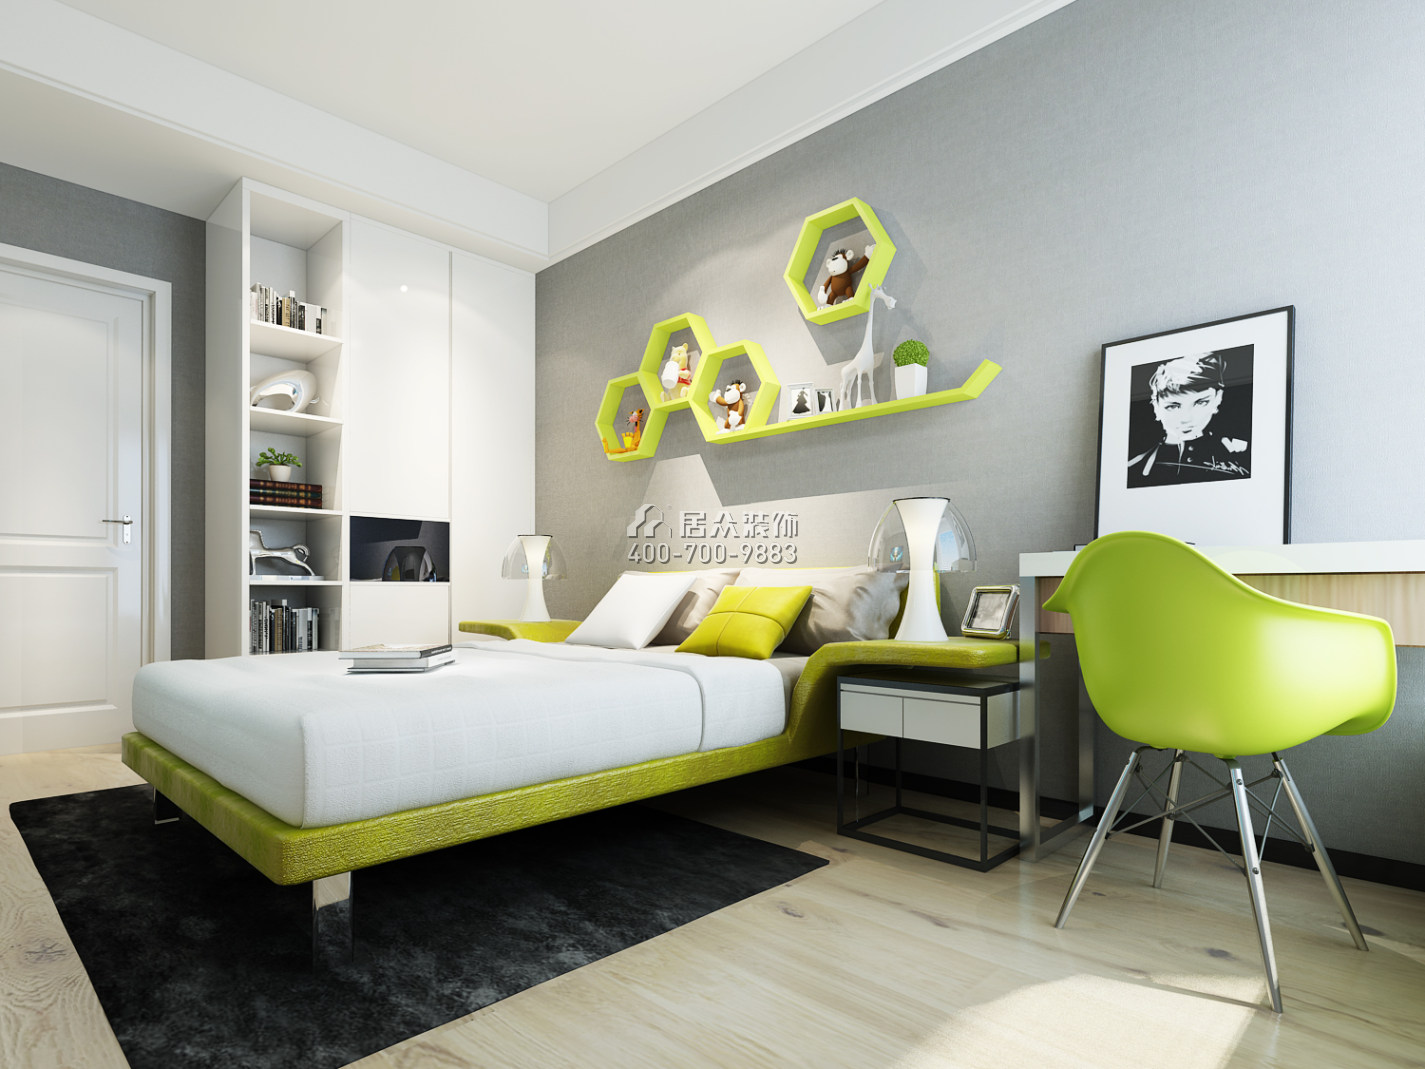 富力桃园140平方米现代简约风格平层户型卧室装修效果图